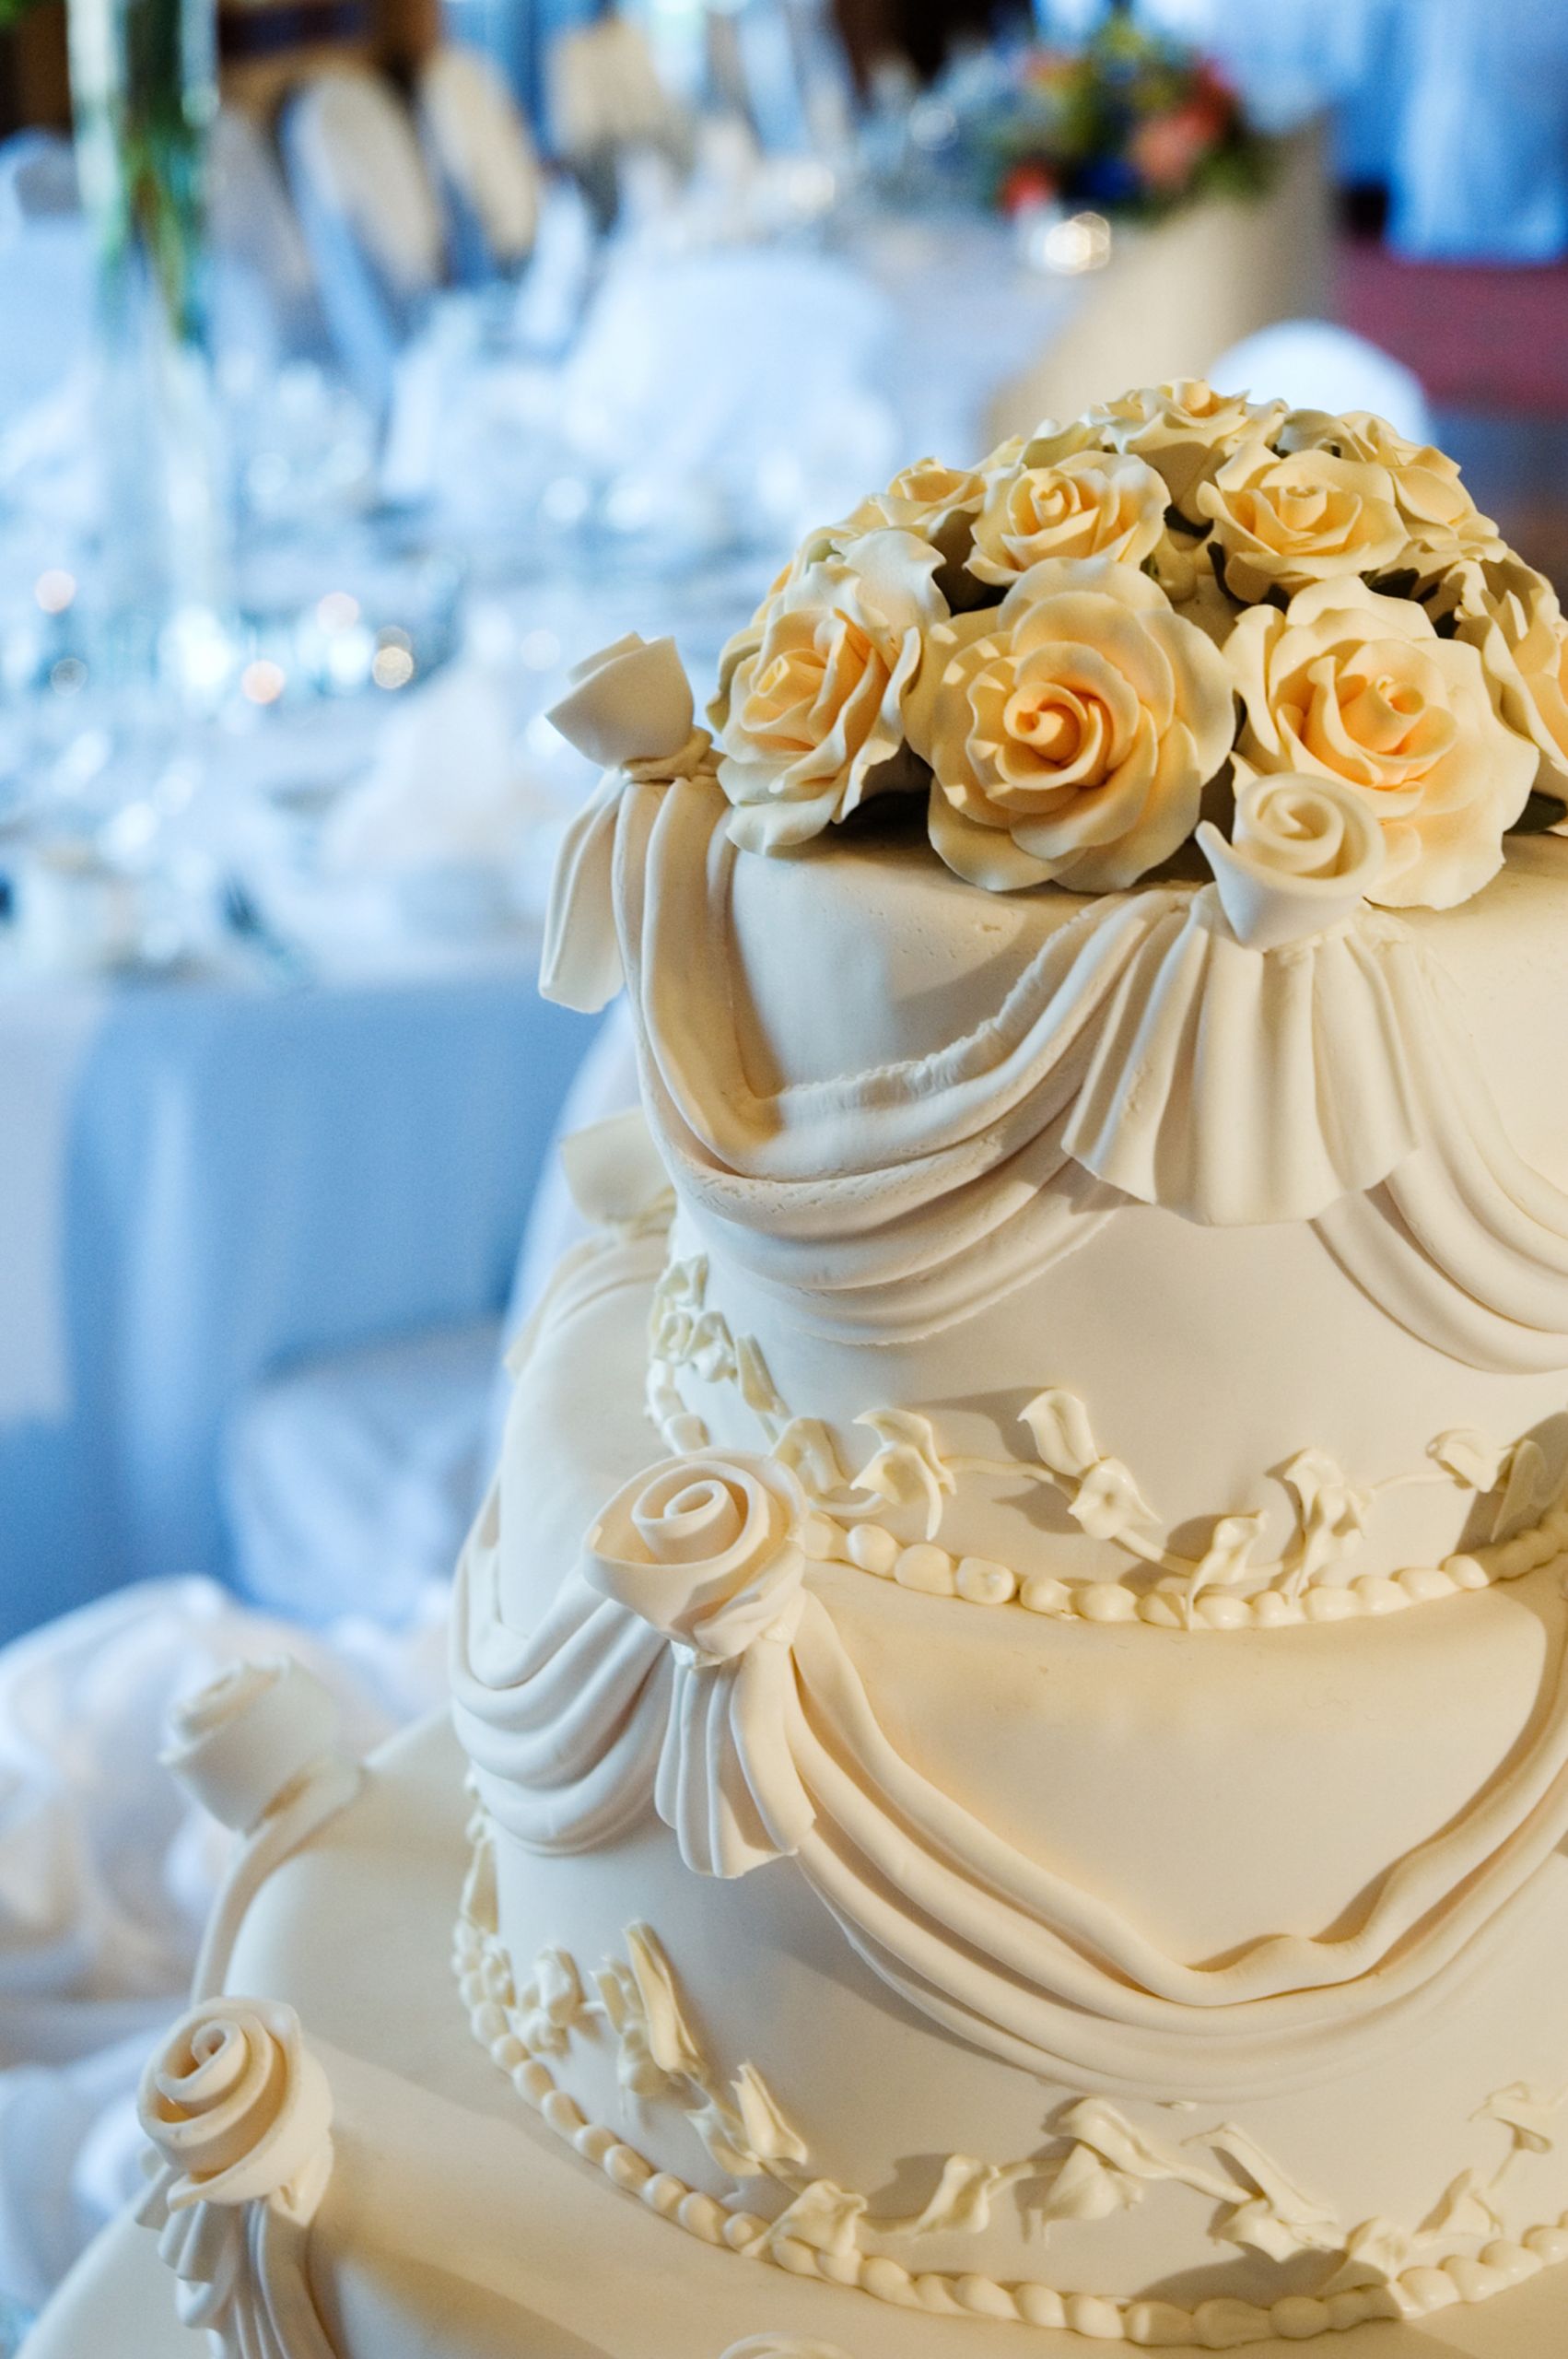 How To Decorate Wedding Cakes
 Wedding Cake Decorating Ideas Easy Wedding Cake